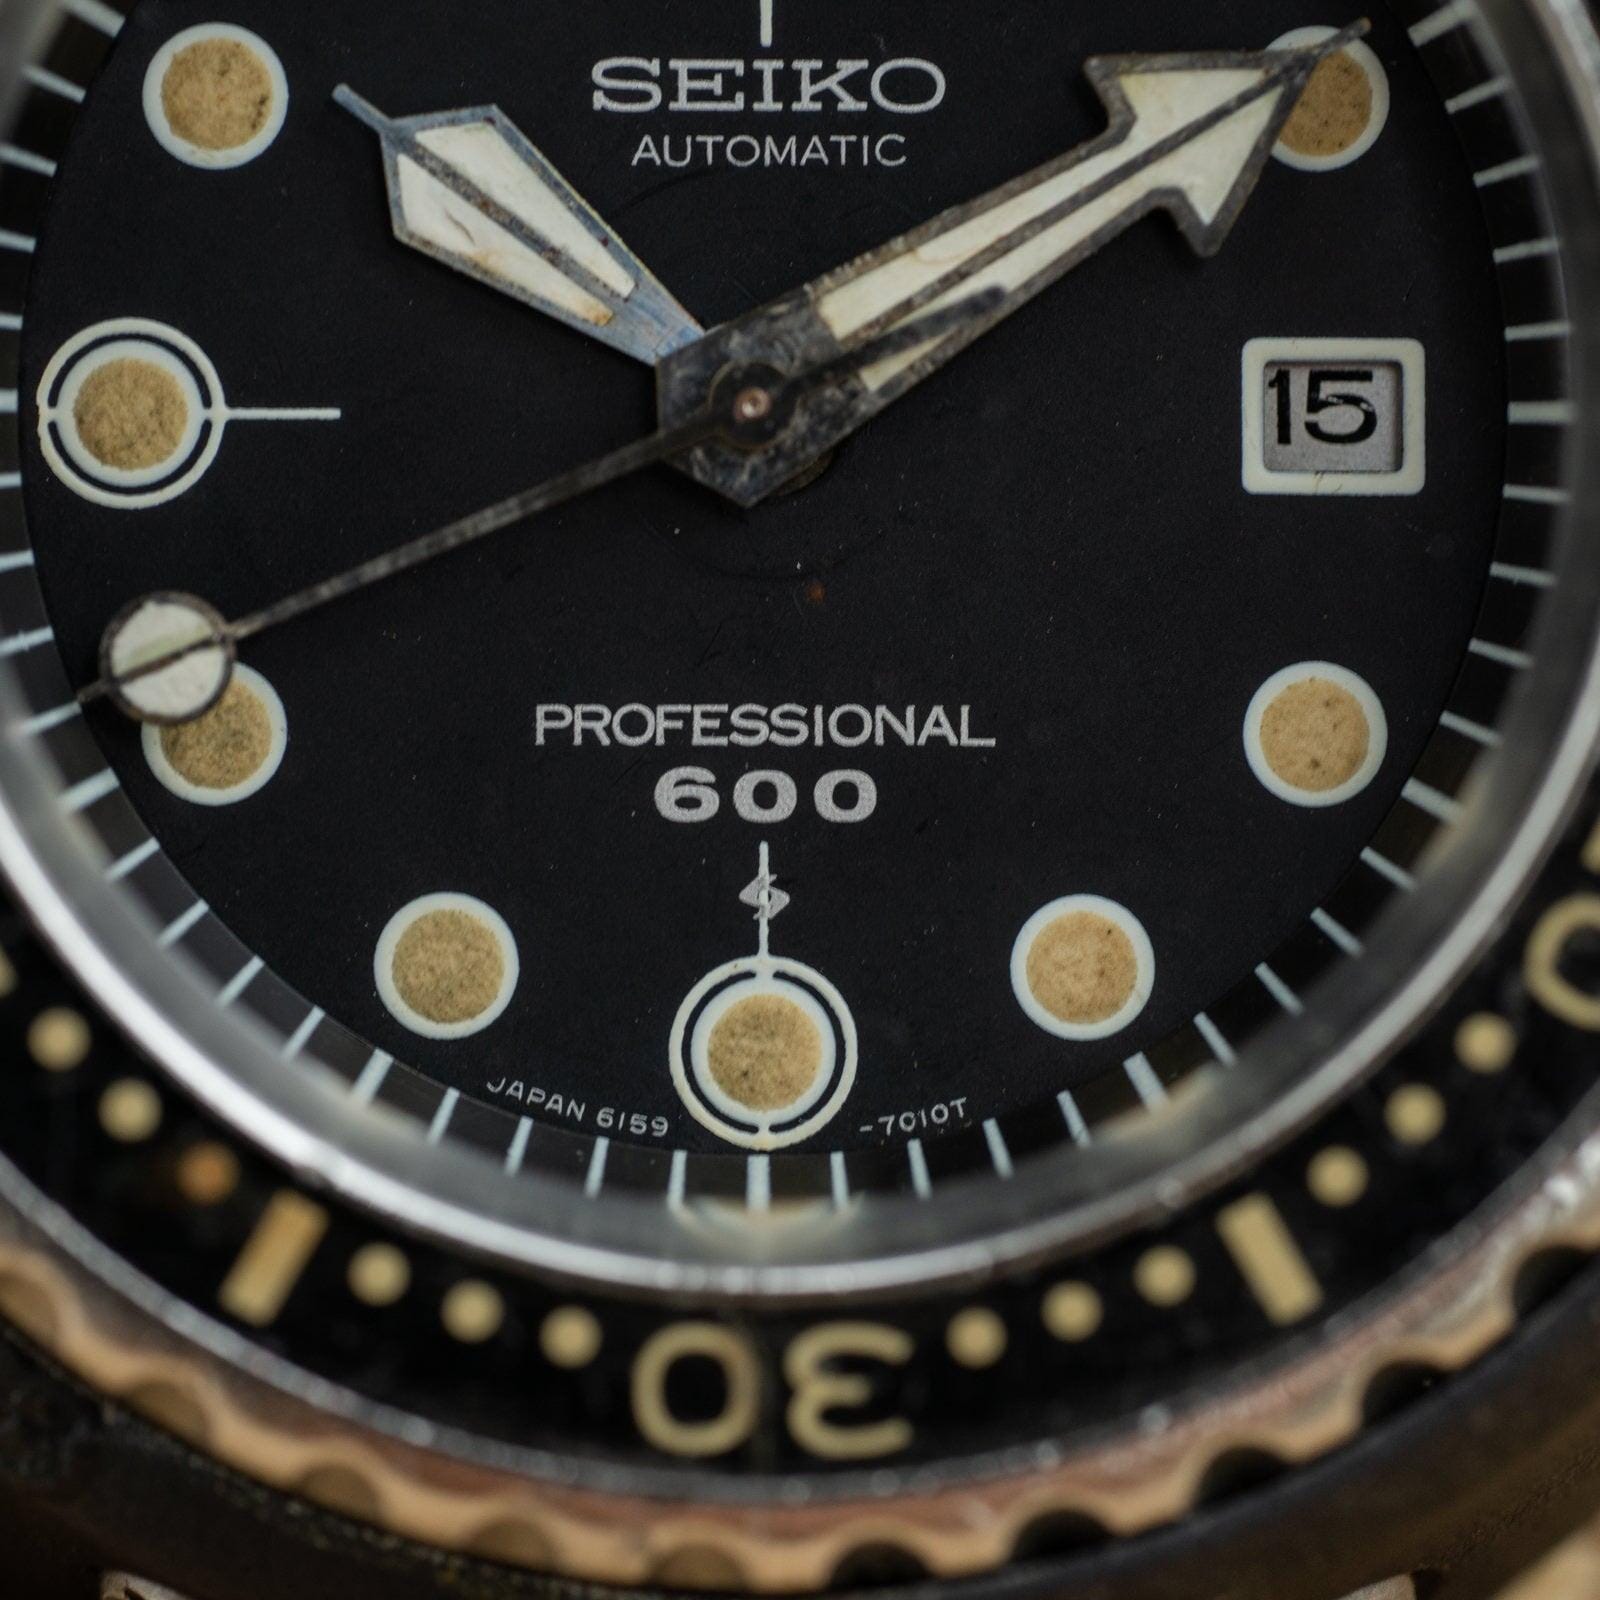 SEIKO Professional Diver 600m 6159-7010 Titanium /セイコー 600m ダイバー ツナ